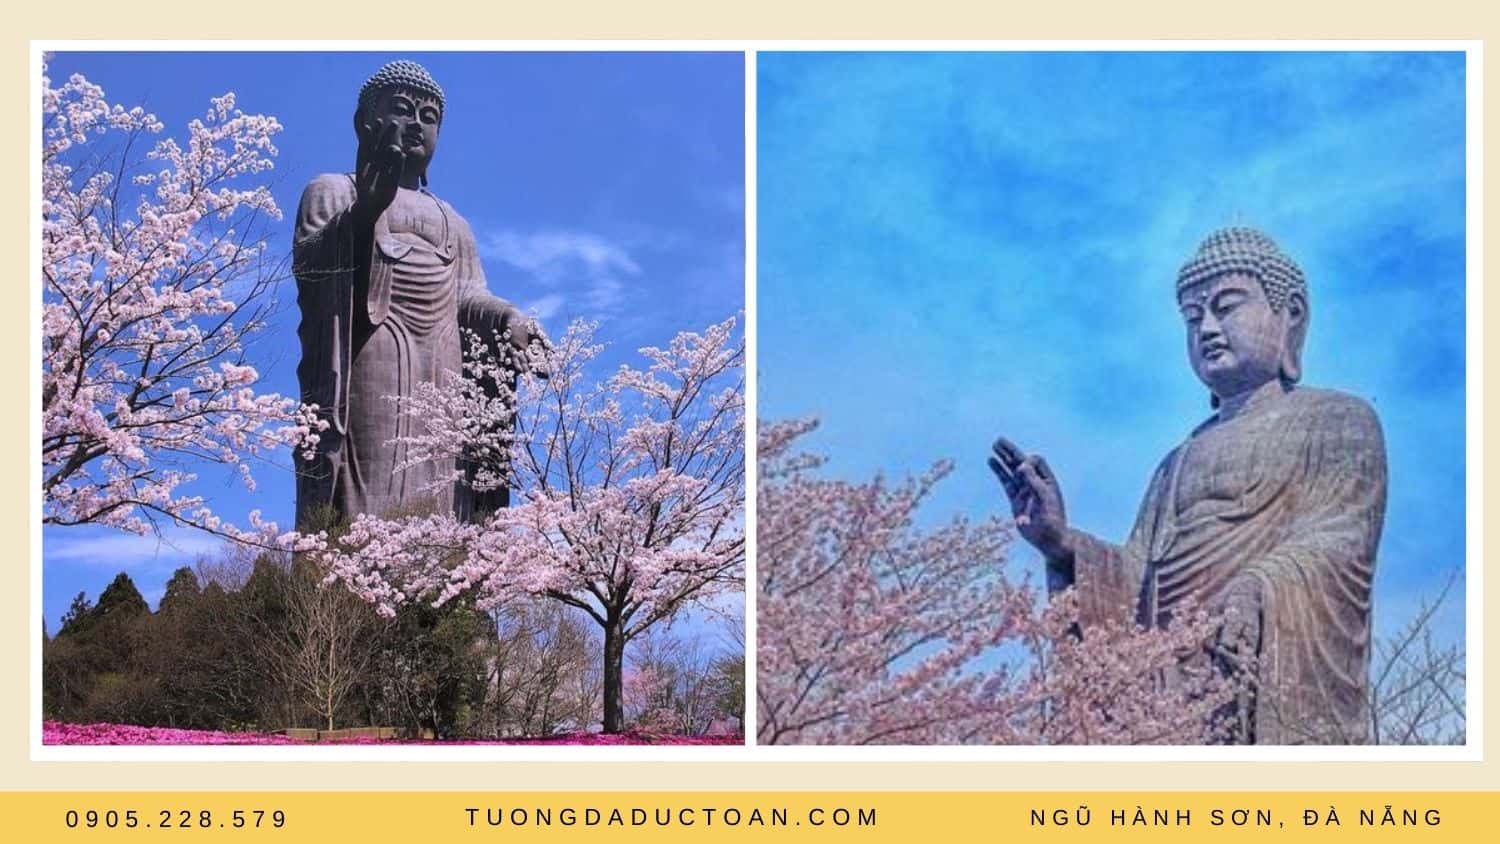 Ushiku Daibutsu là tượng Phật bằng đồng lớn nhất thế giới do Chùa Higashi Honganji xây dựng và hoàn thành vào năm 1995.